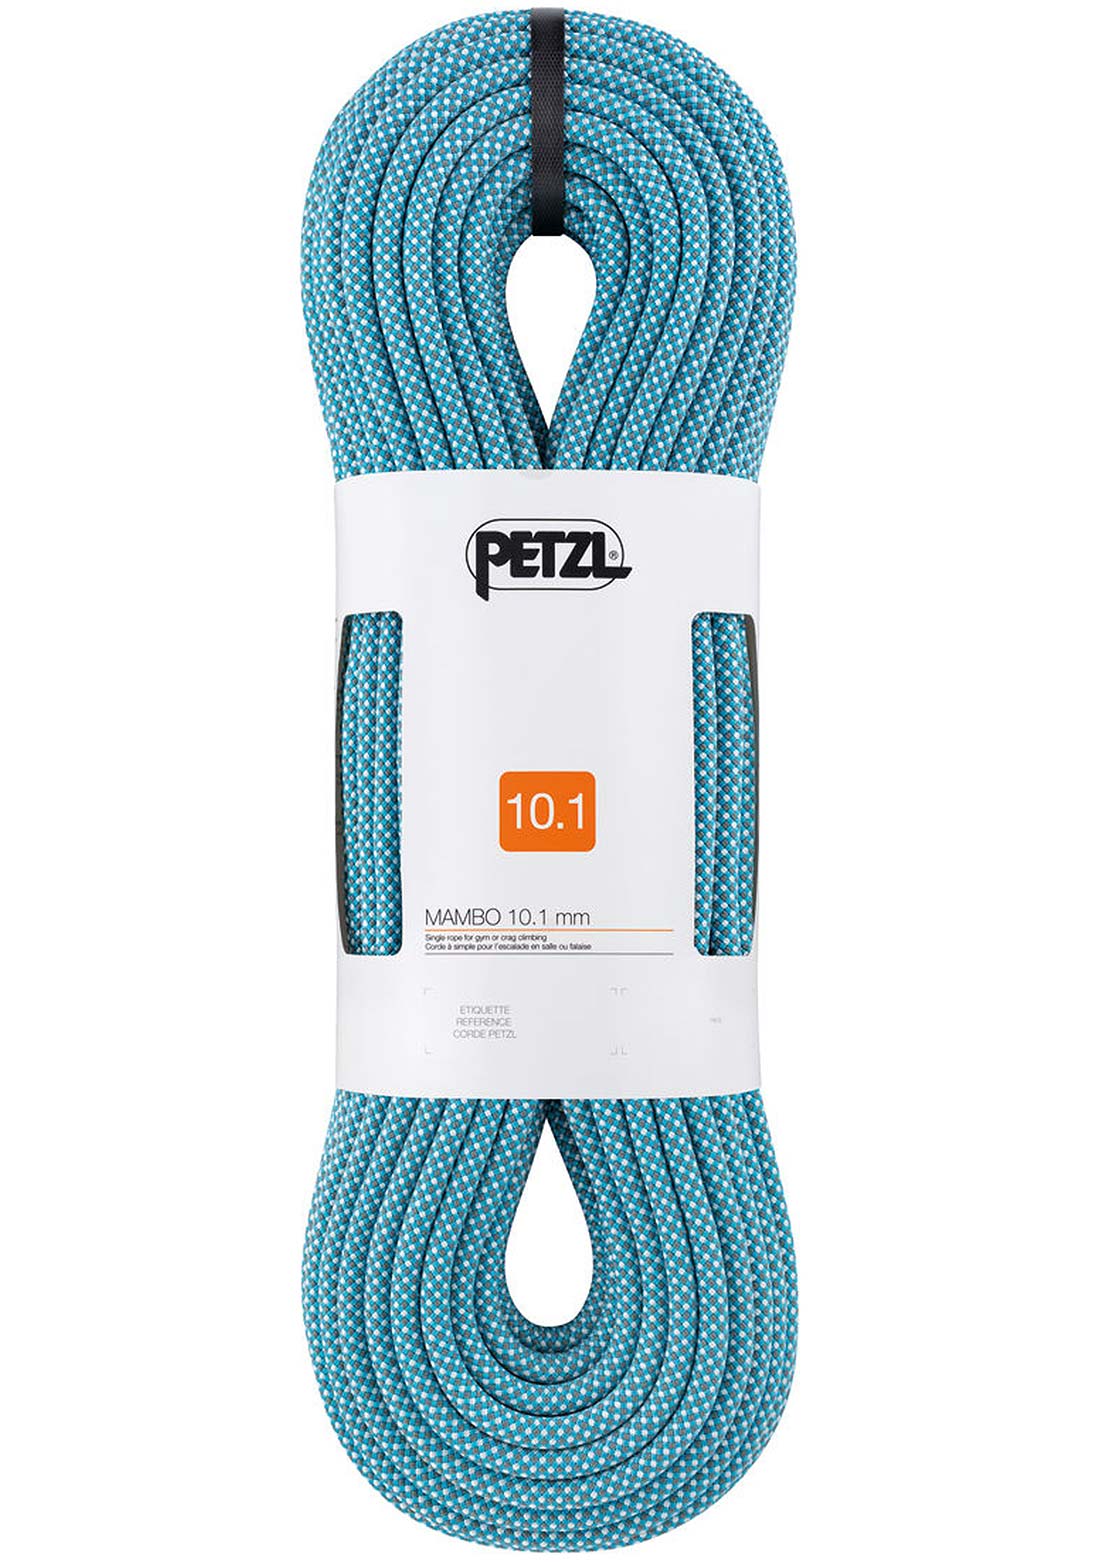 Petzl Mambo 10.1mm Climbing Rope - 60m Turquoise